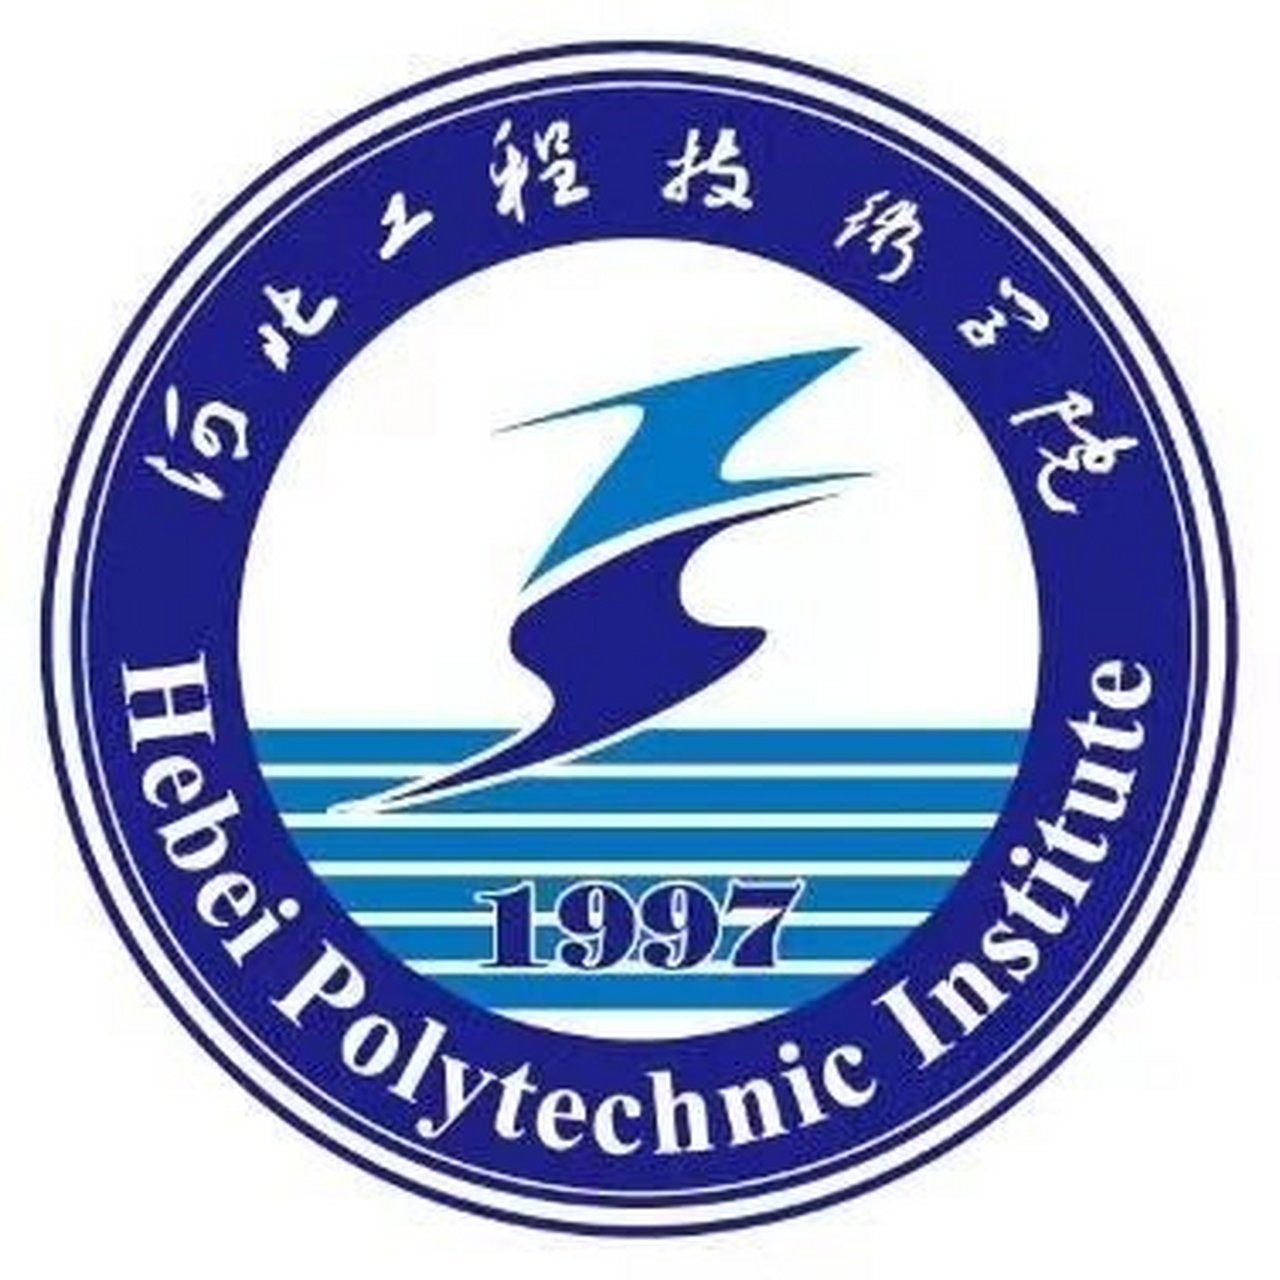 河北工程技术学院地址图片